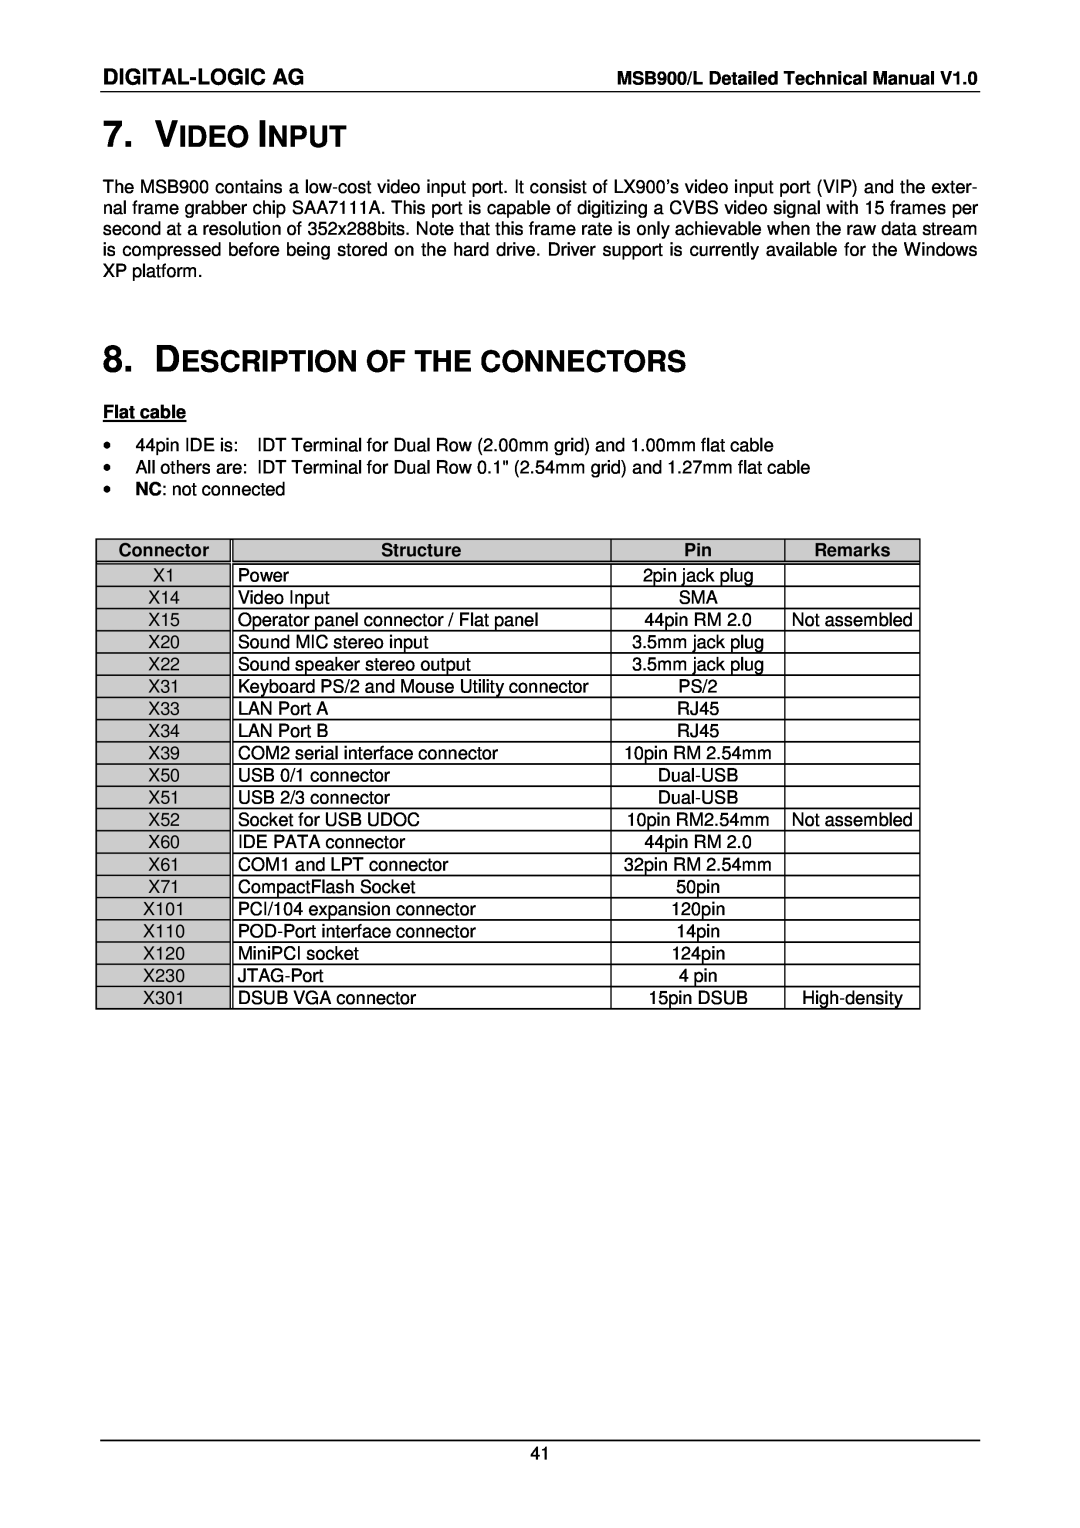 Compaq MSB900L user manual Video Input, Description Of The Connectors, Digital-Logic Ag 